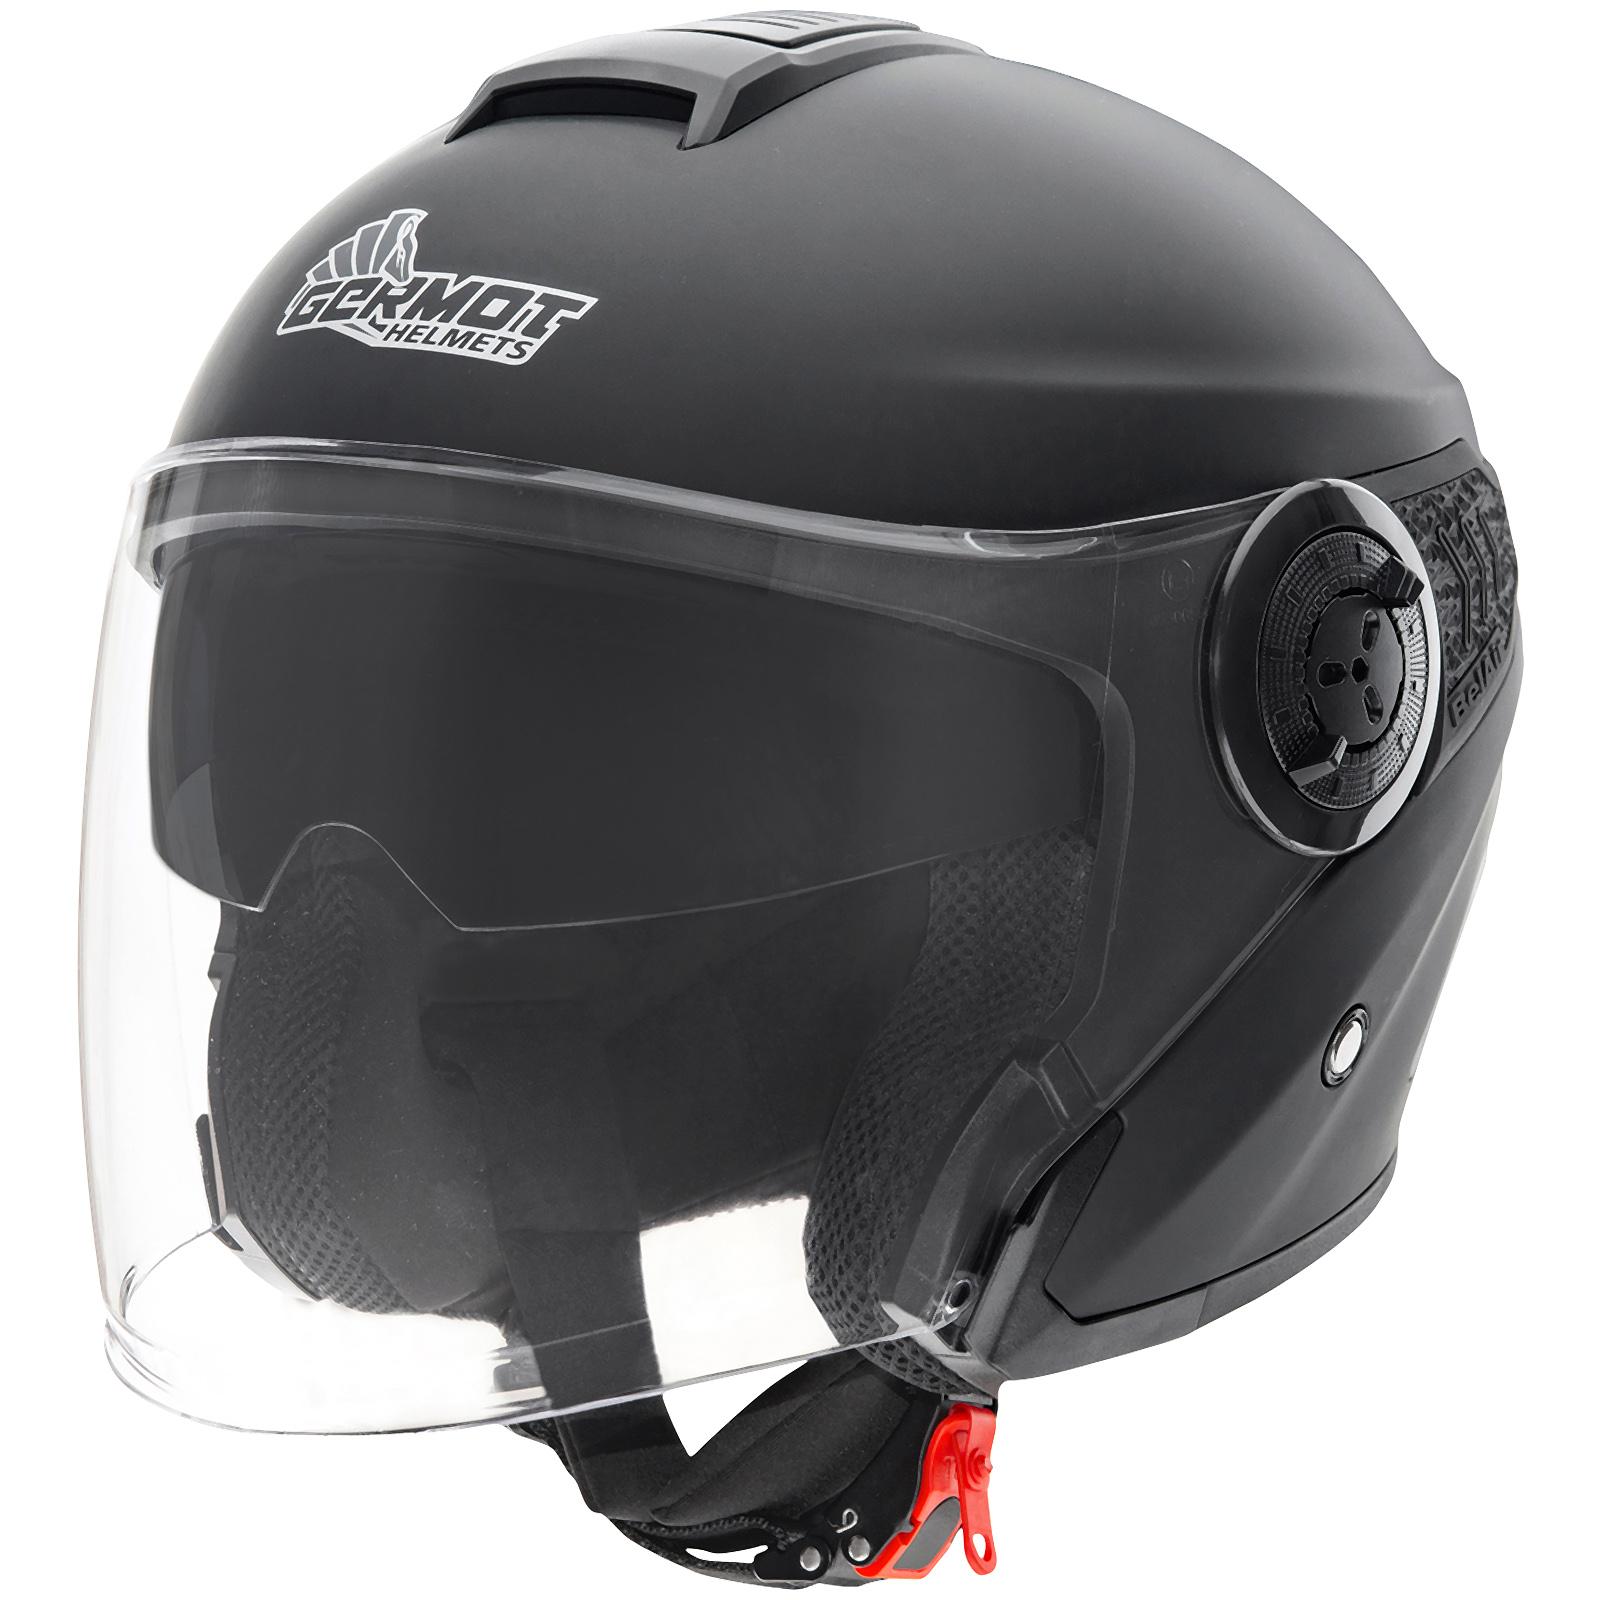 Germot GM 217 Motorrad Helm schwarz matt mit Nasenspoiler und kratzfestes Visier 